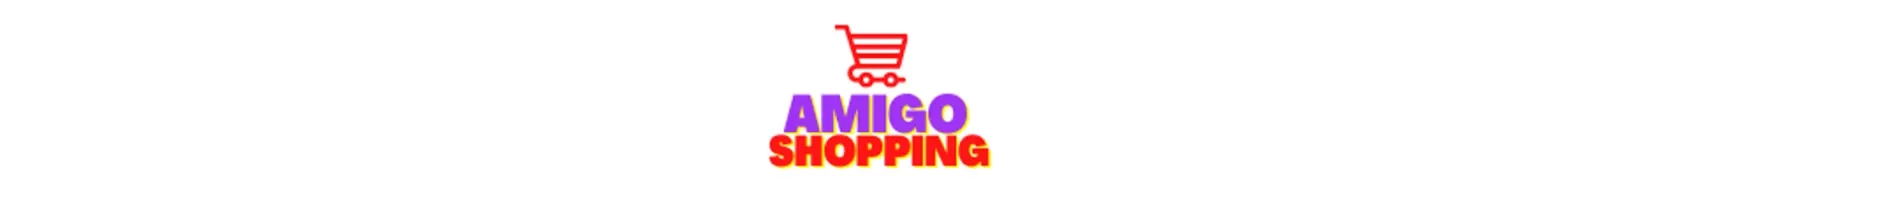 Amigo shopping logo